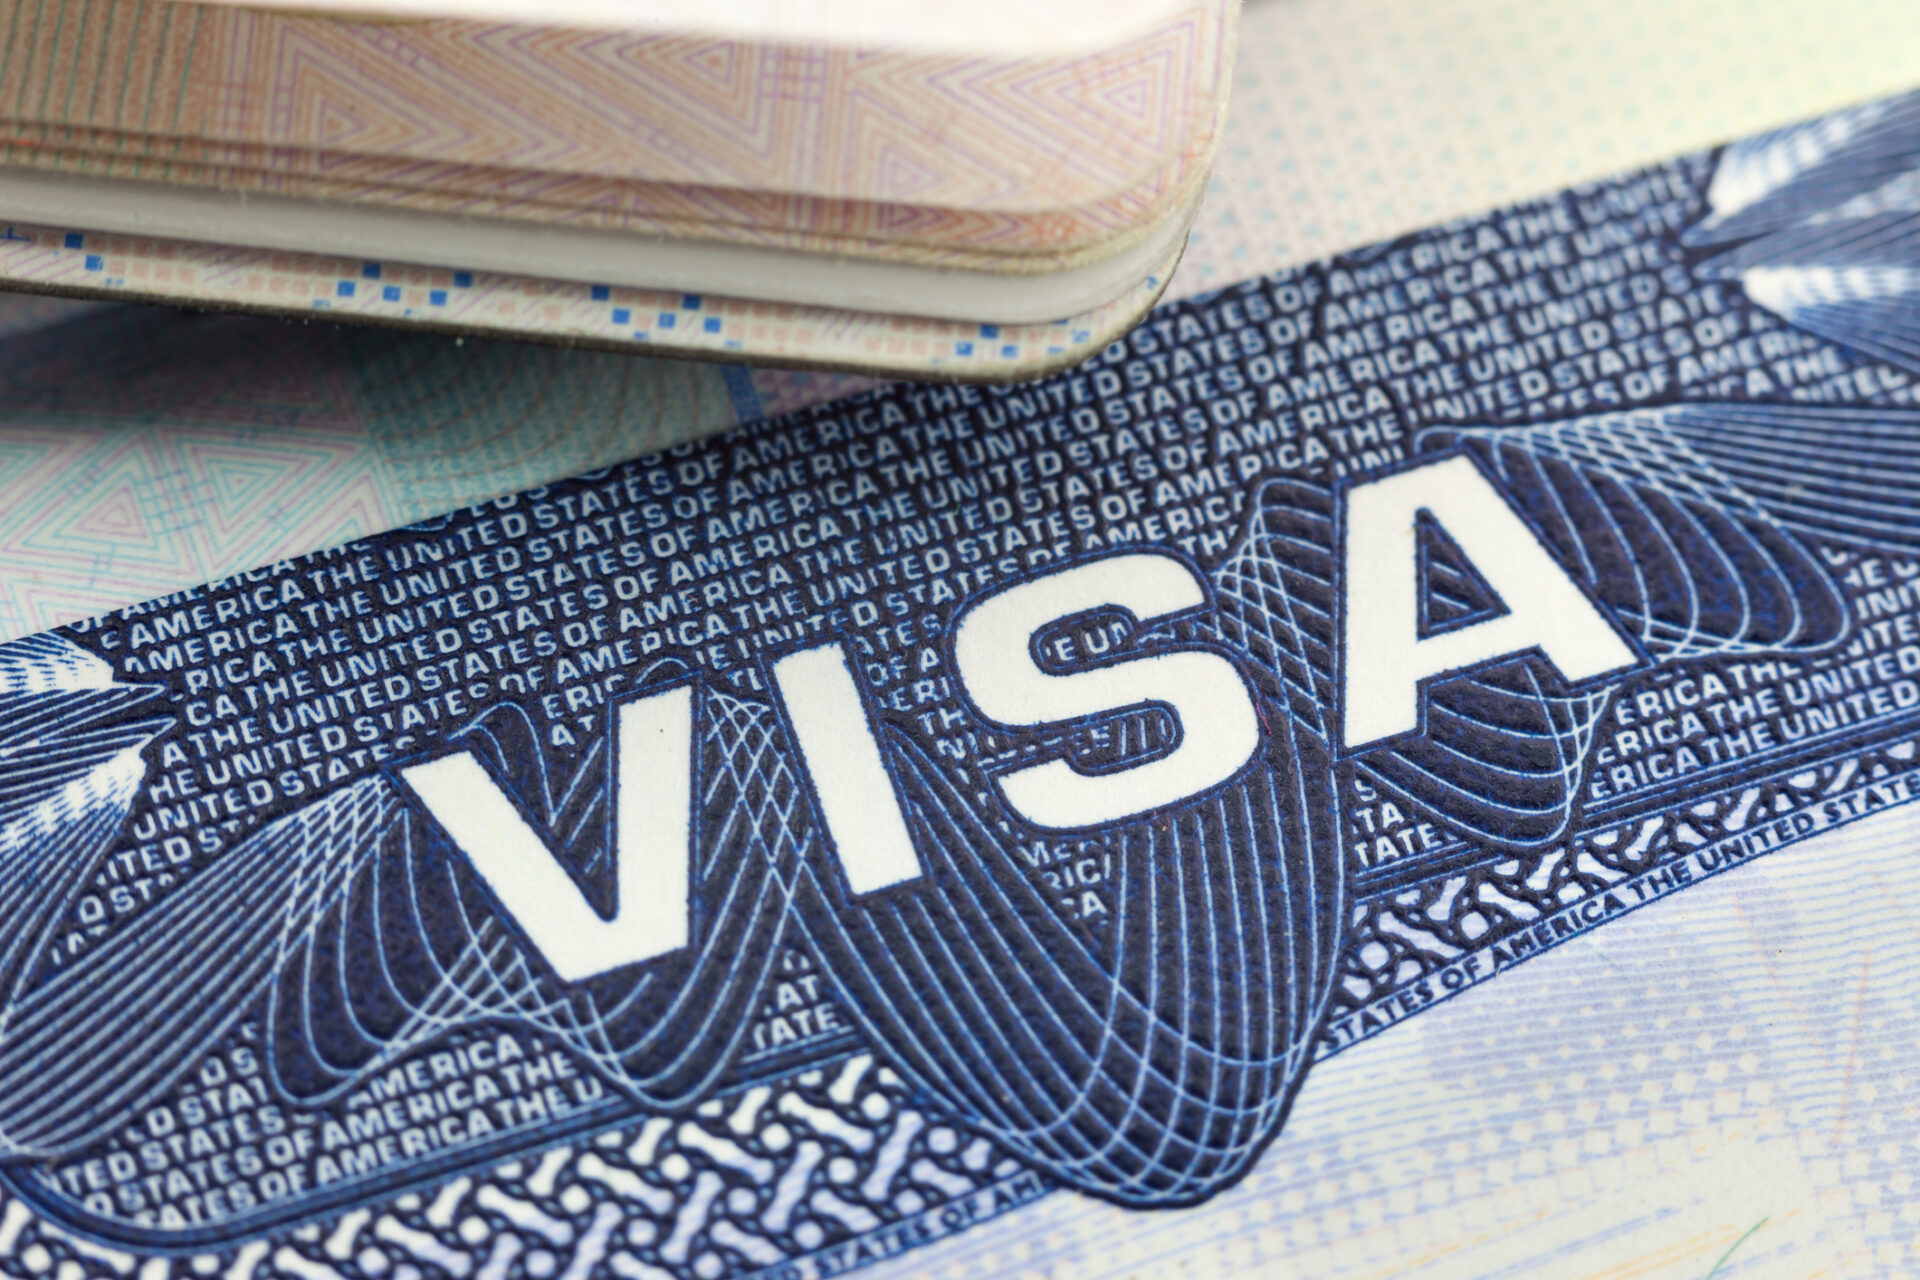 A close up of a visa sitting in a U.S. passport